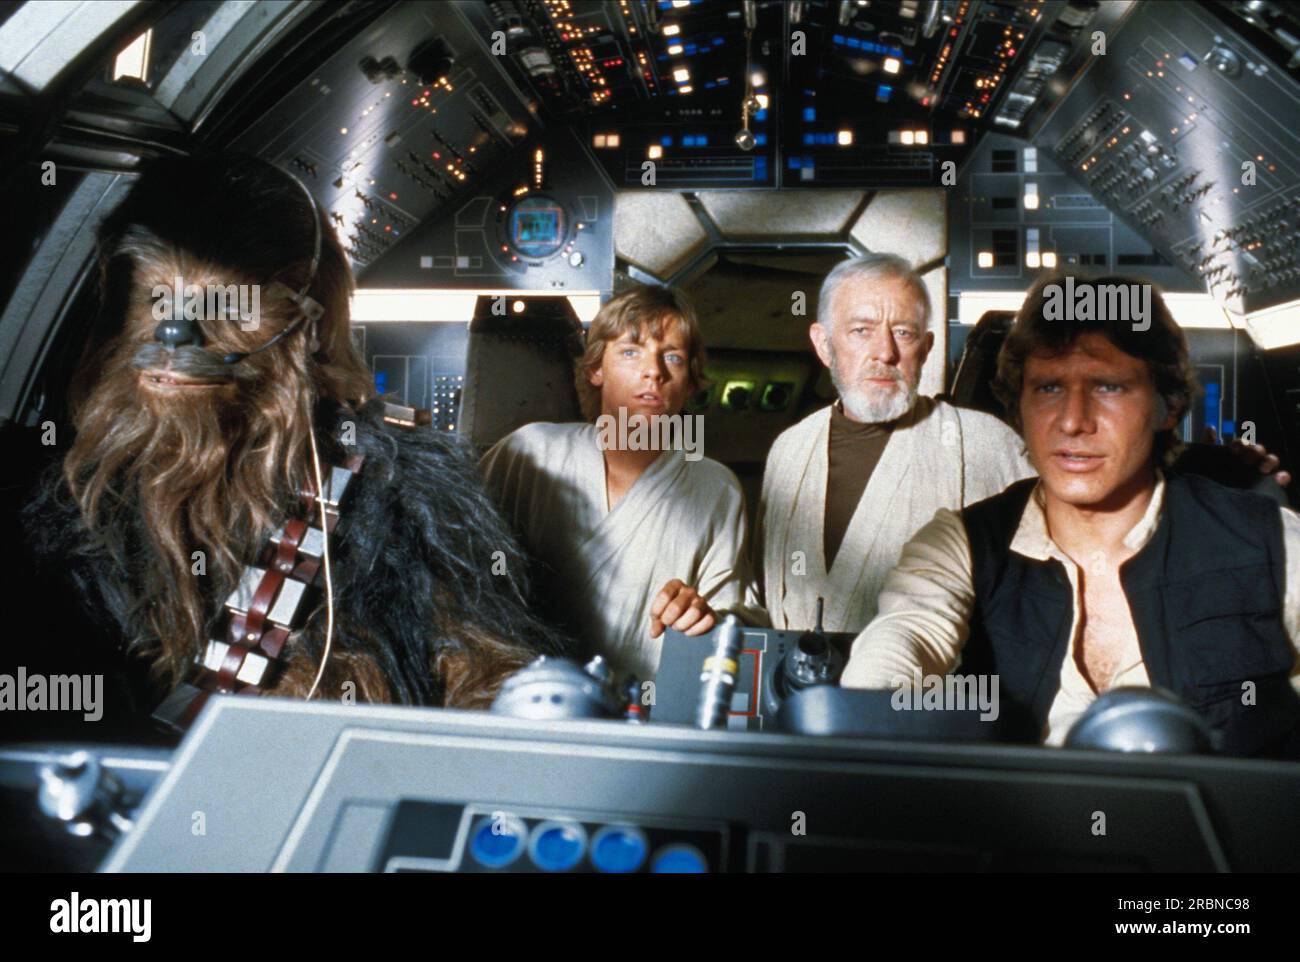 Star Wars Star Wars episodio IV: Una nuova speranza Peter Mayhew, Mark Hamill, Alec Guinness e Harrison Ford Foto Stock